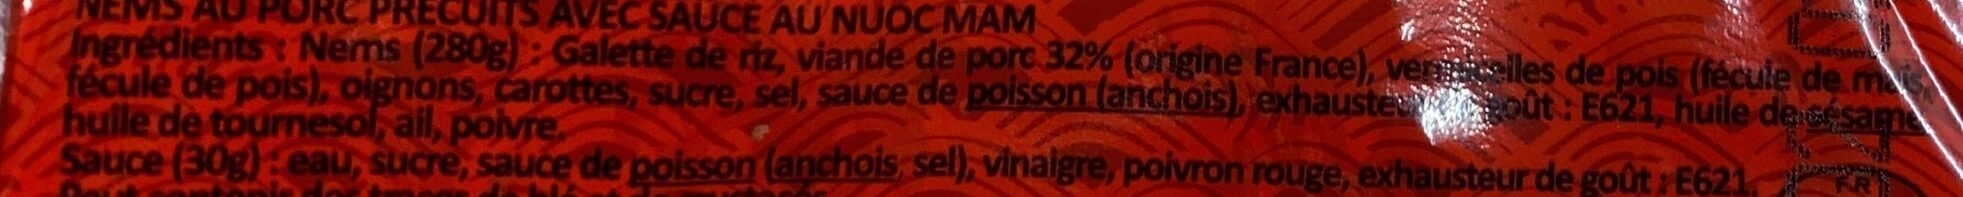 Nem au Porc 8P - 280g + Sauce - 30g - Ingredients - fr